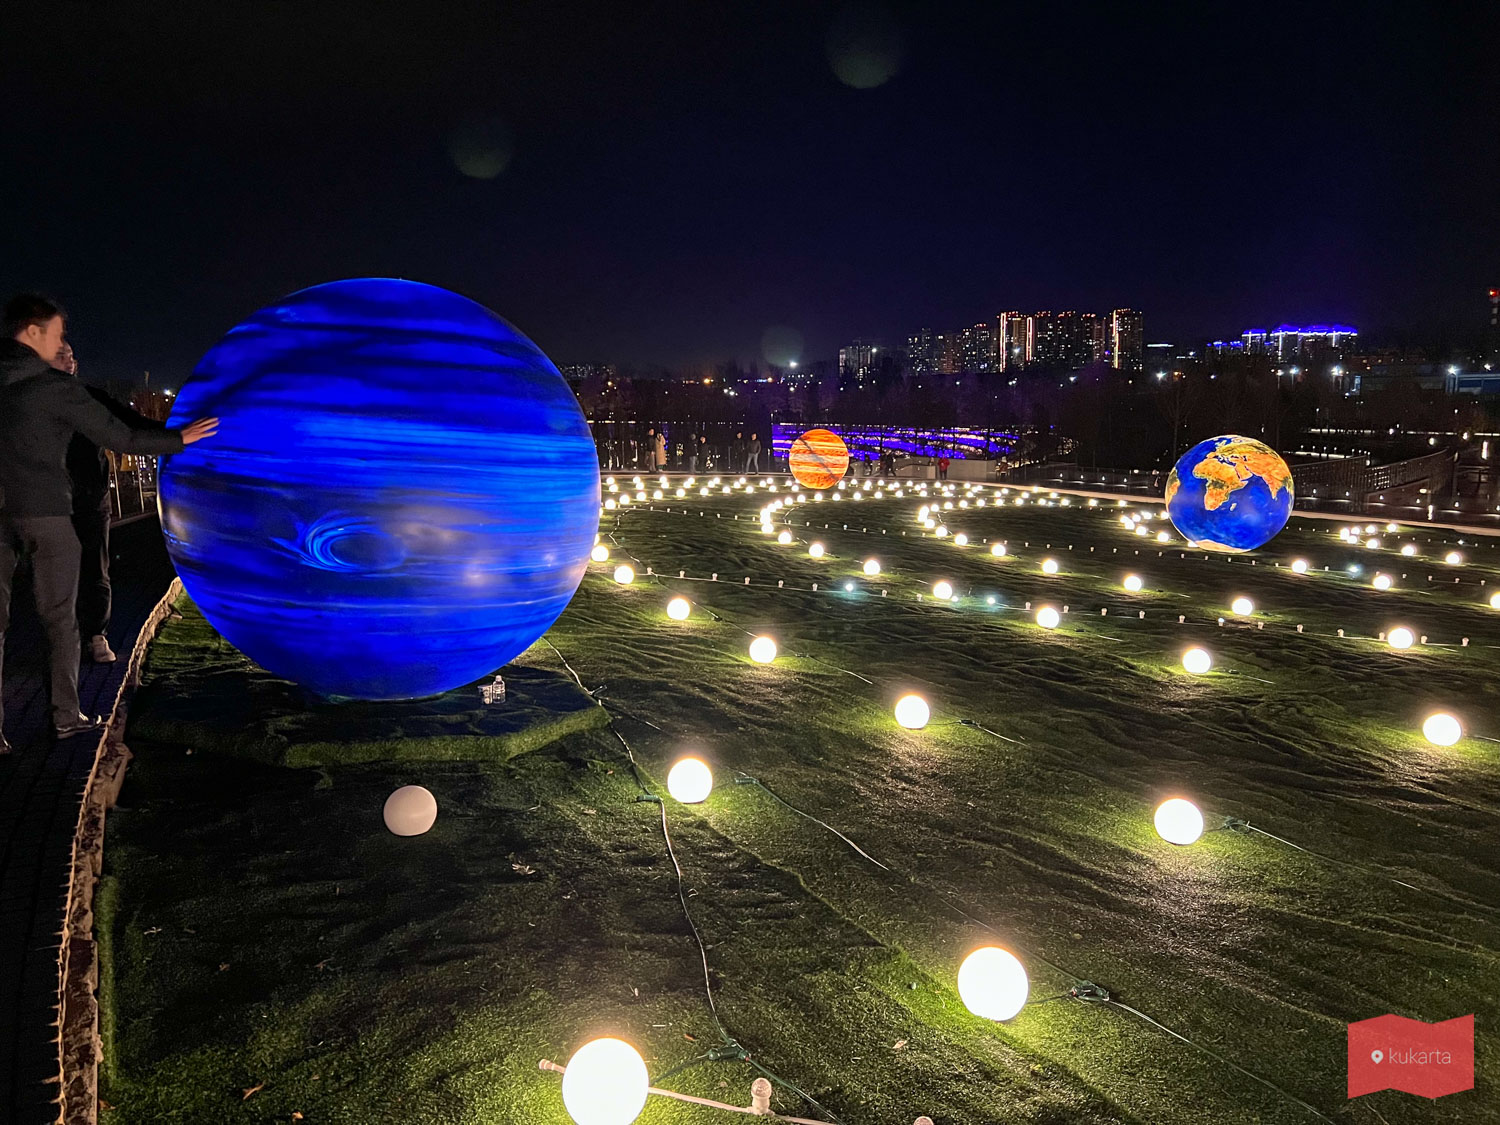 Копия Солнечной системы (Парад планет) в парке Галицкого, Краснодар